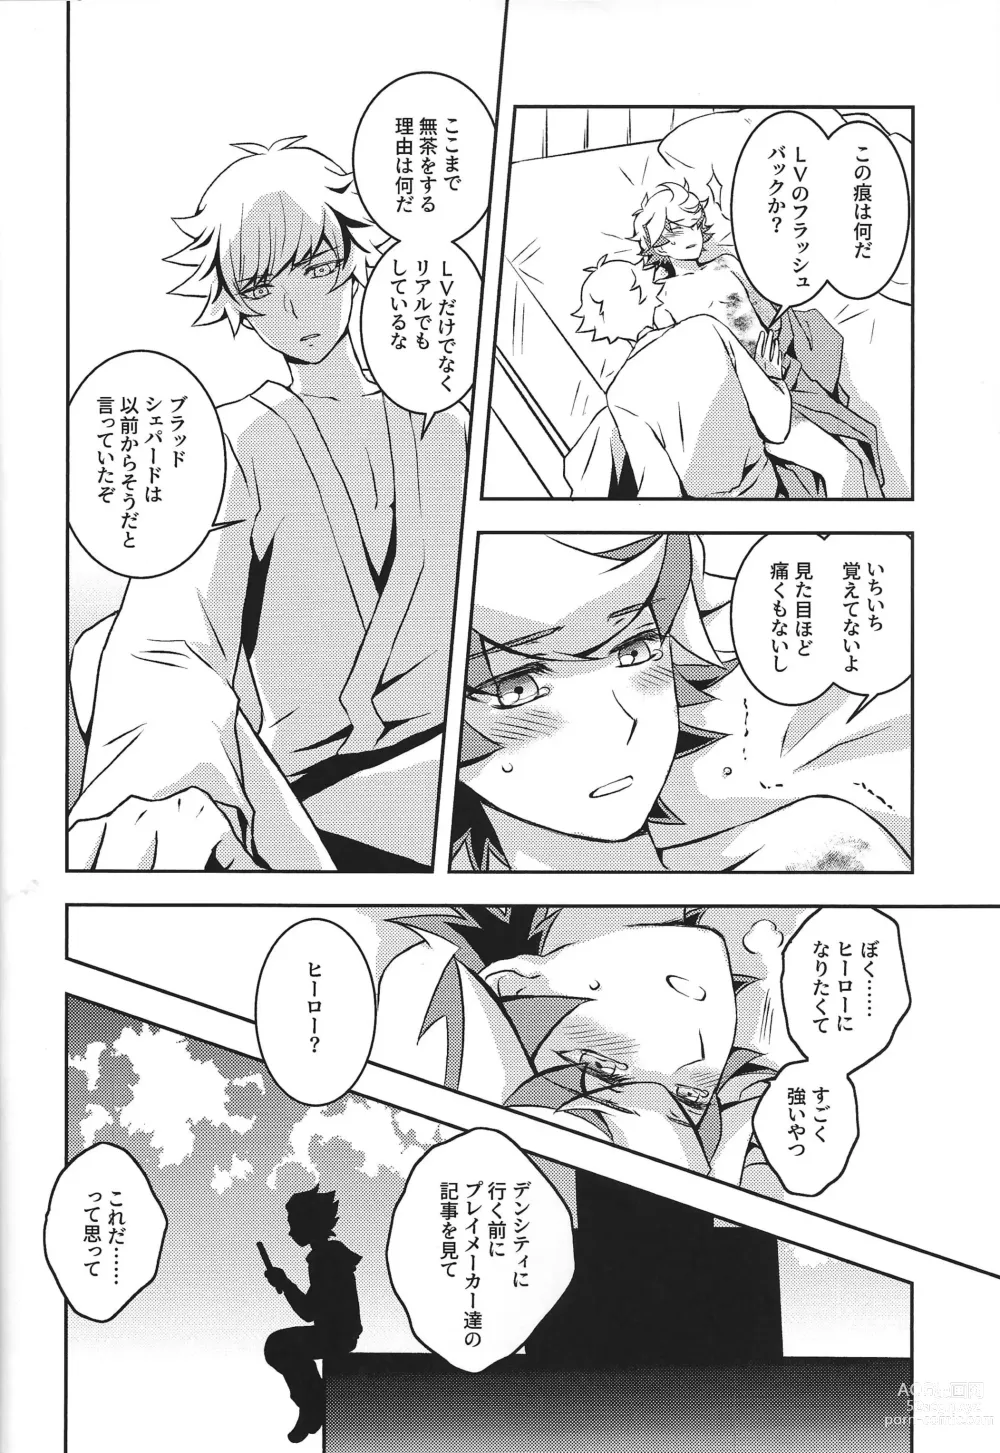 Page 21 of doujinshi Mamoru Imi